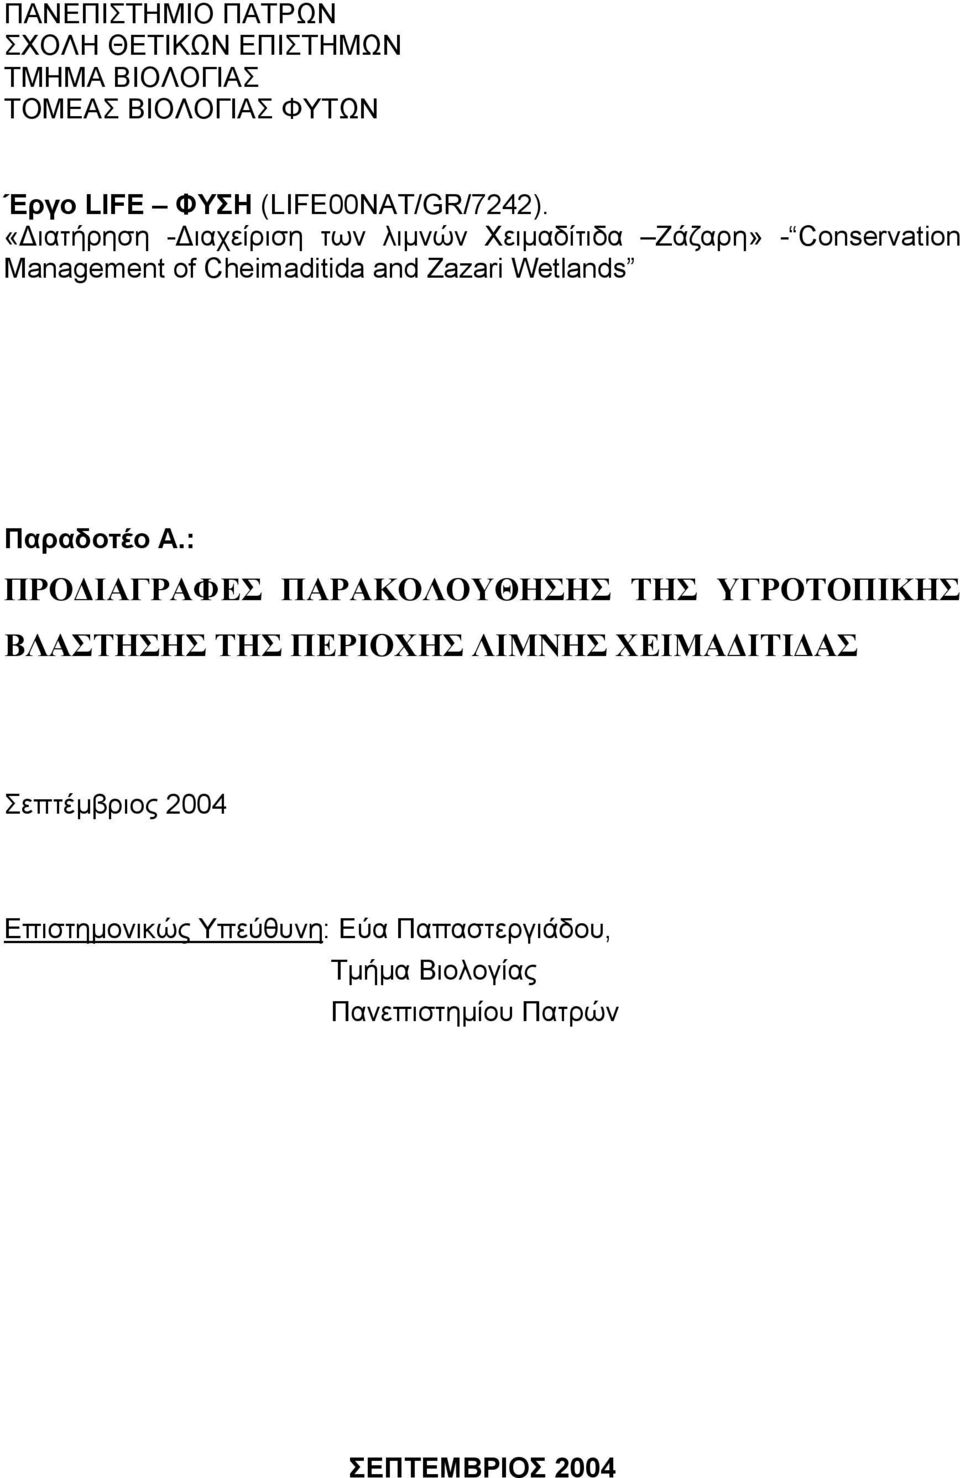 «Διατήρηση -Διαχείριση των λιμνών Χειμαδίτιδα Ζάζαρη» - Conservation Management of Cheimaditida and Zazari